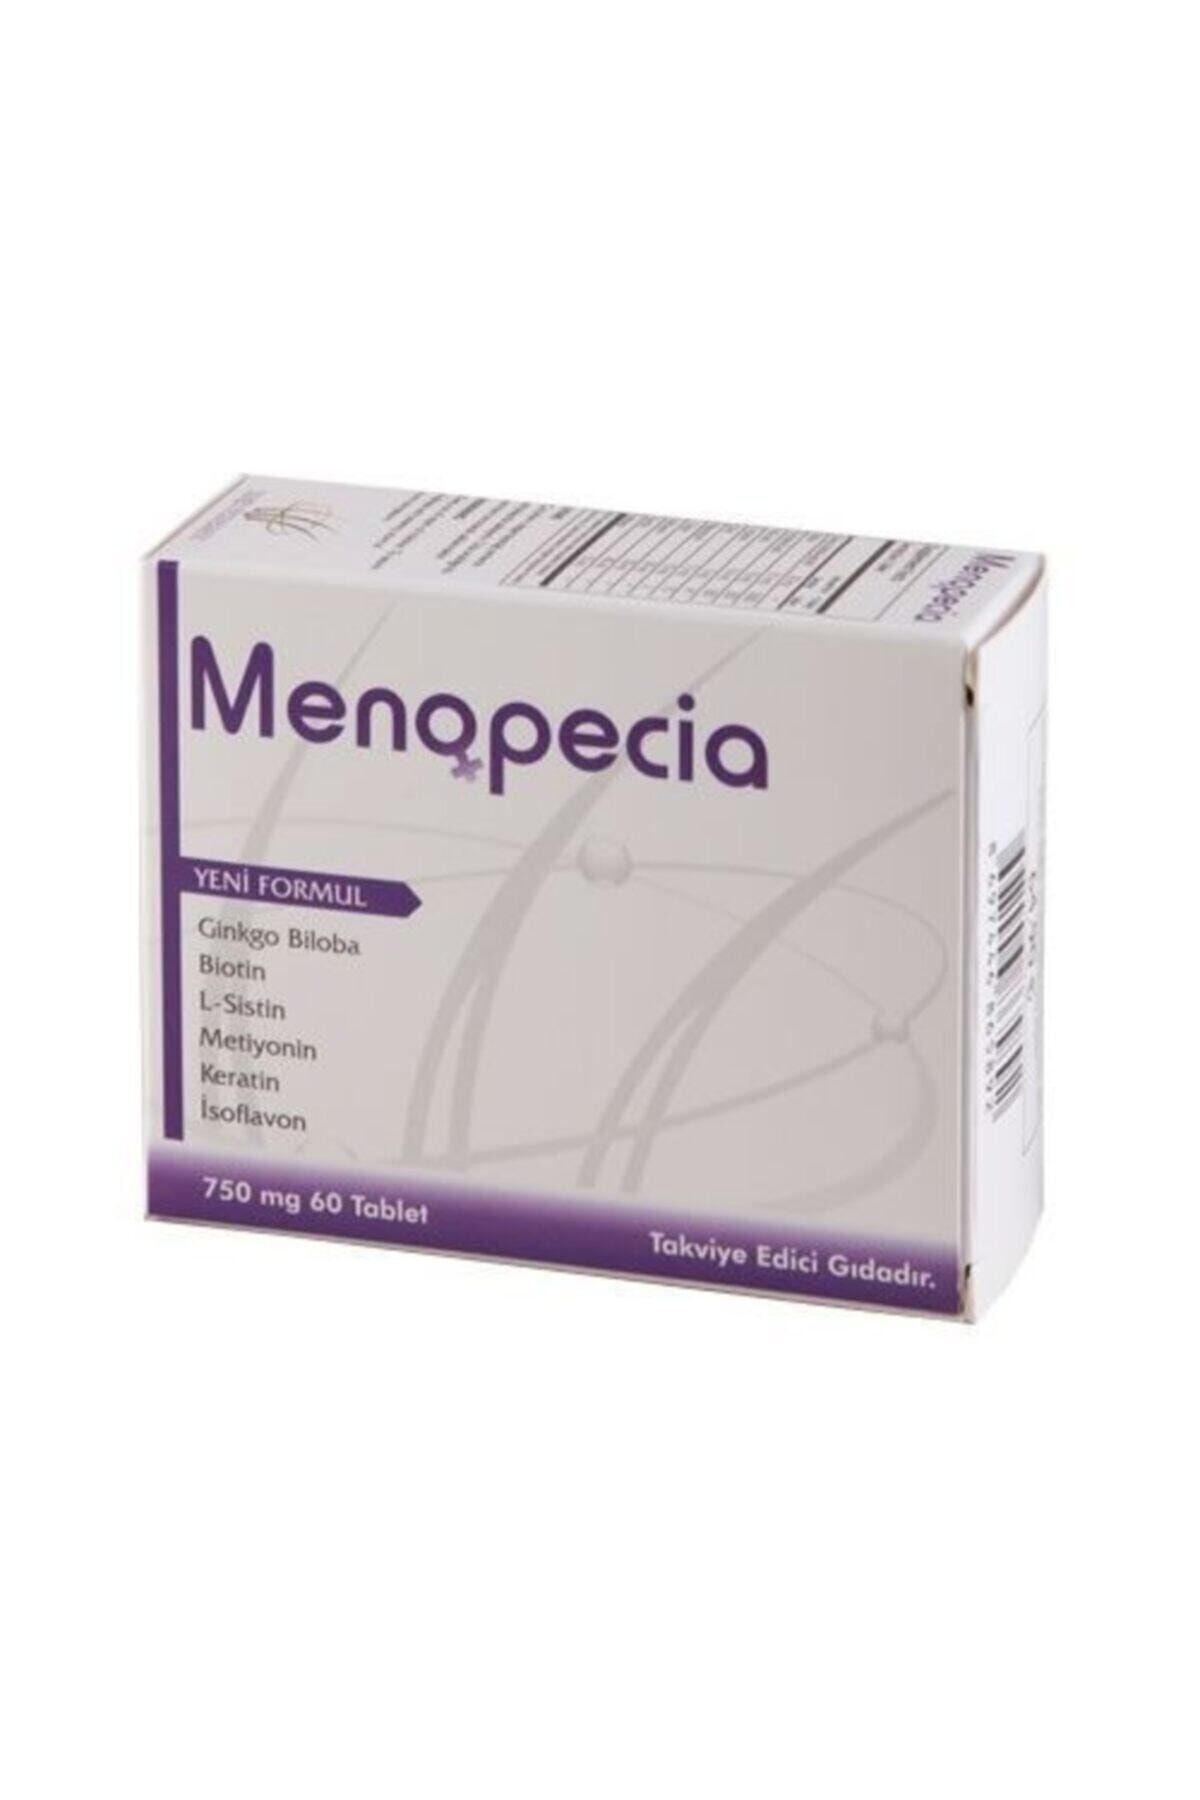 Hair Pharma Menopecia 60 Tablet